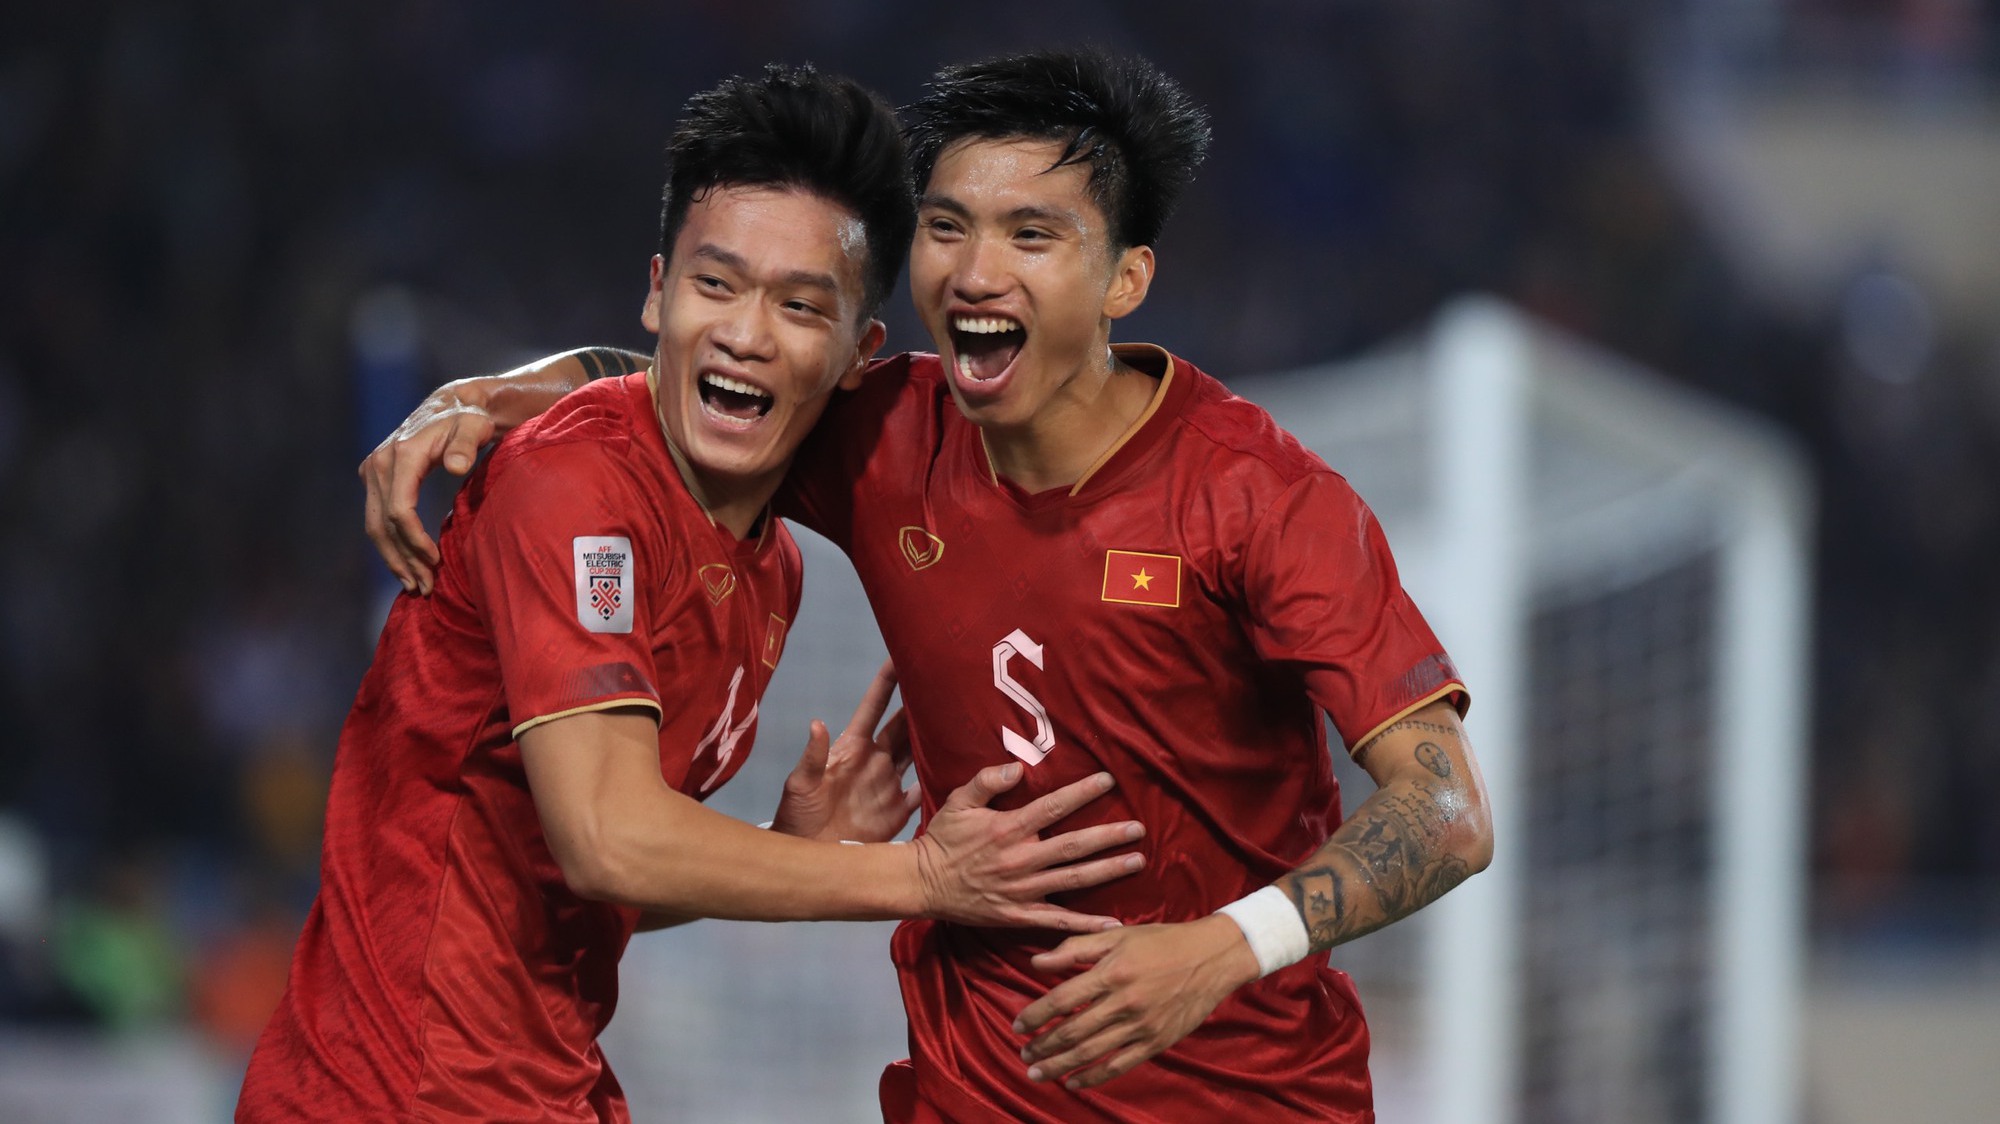 Tin nóng AFF Cup ngày 29/12: Thầy Park bảo vệ Văn Hậu, Indonesia vs Thái Lan (16h30)